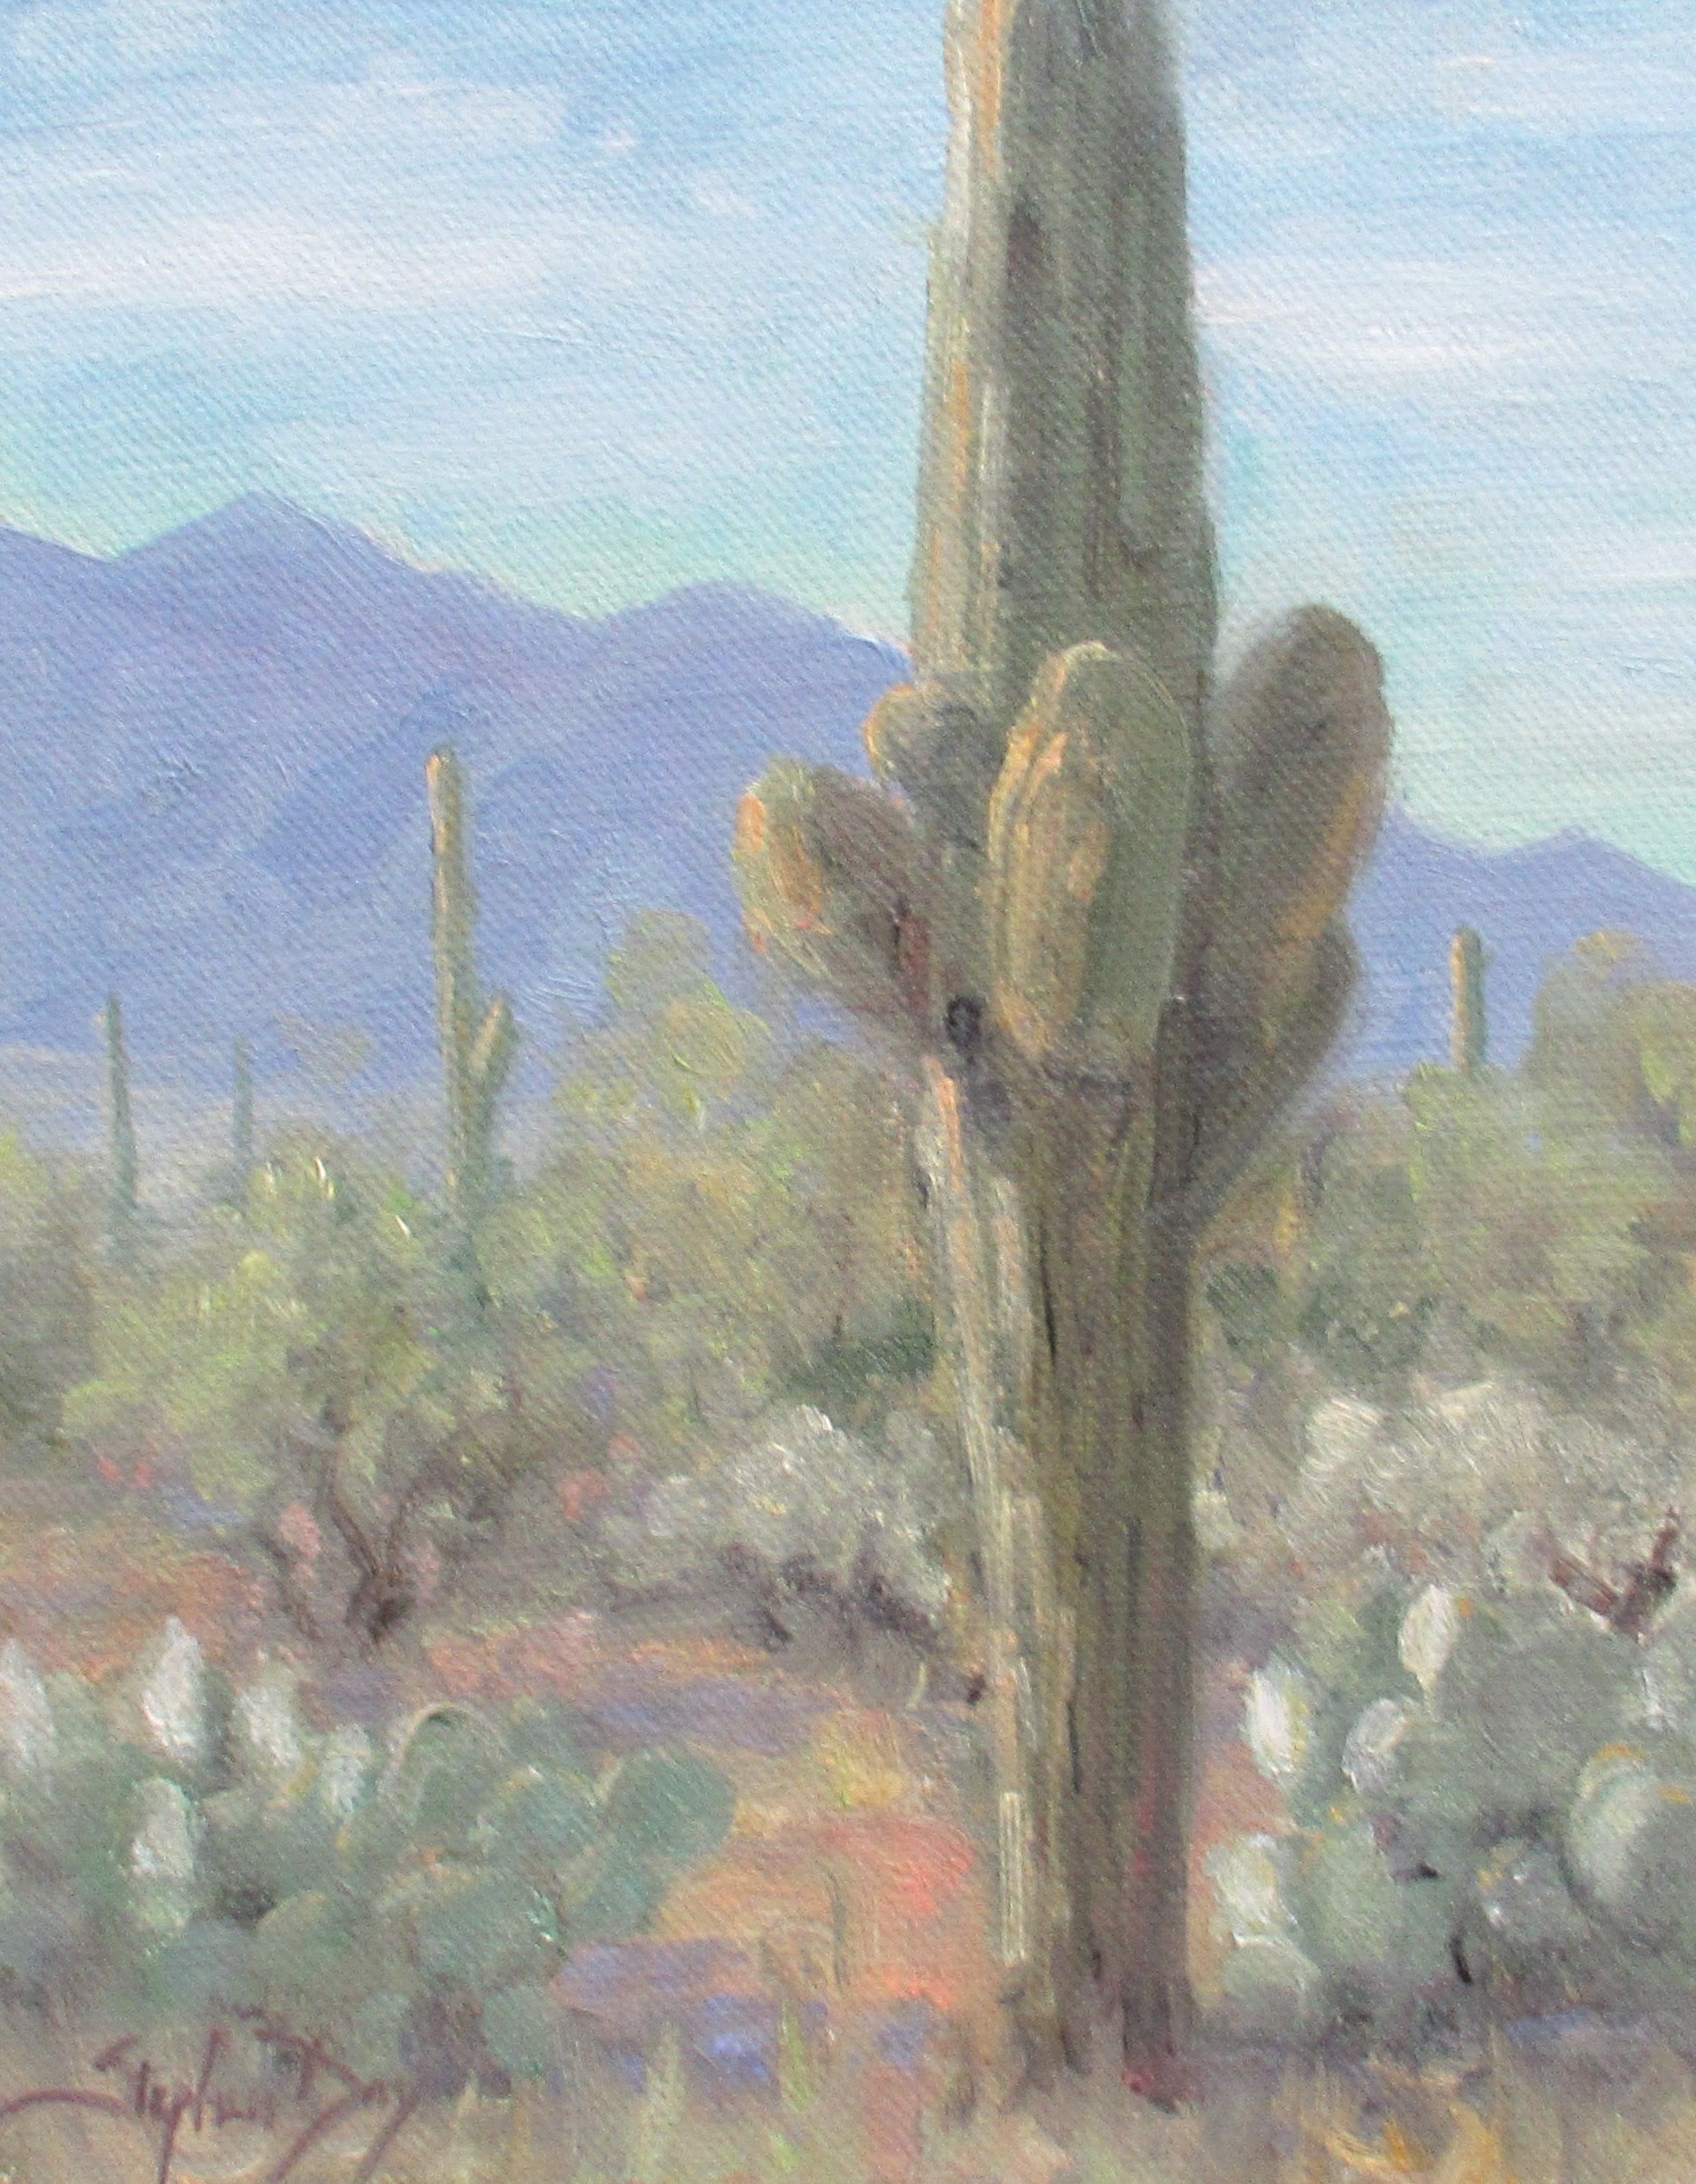 Desert Morning by Stephen Day